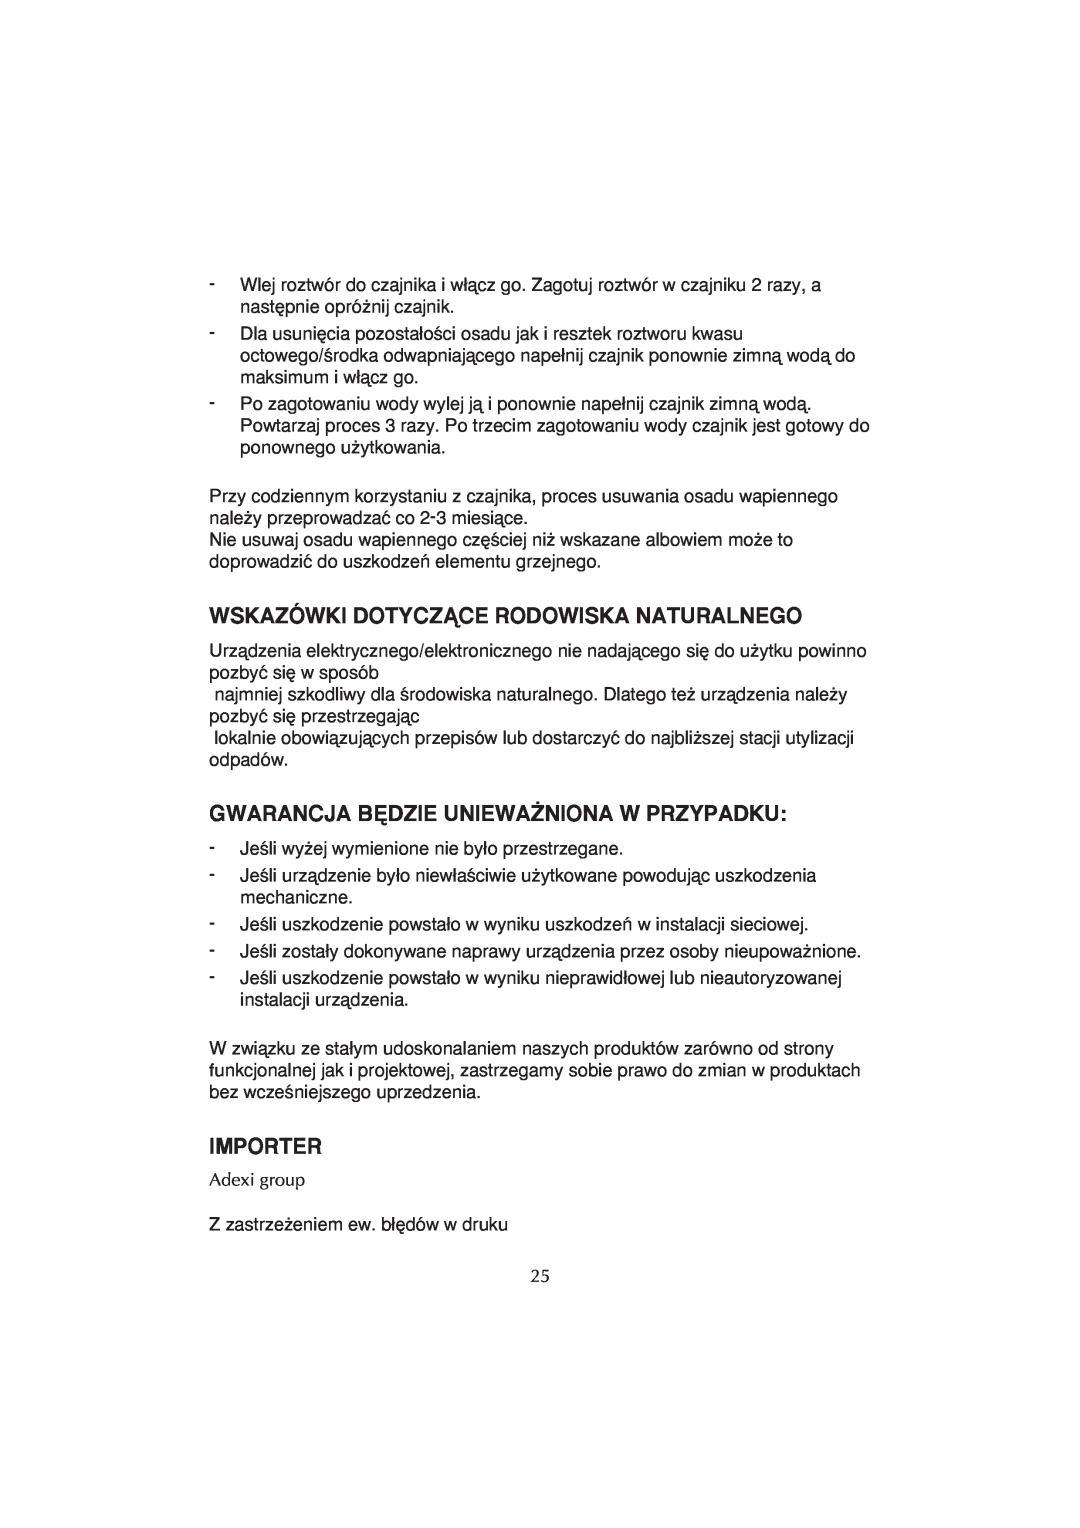 Melissa WK-222 manual Wskazówki Dotyczñce Rodowiska Naturalnego, Gwarancja B¢Dzie Uniewa˚Niona W Przypadku, Importer 